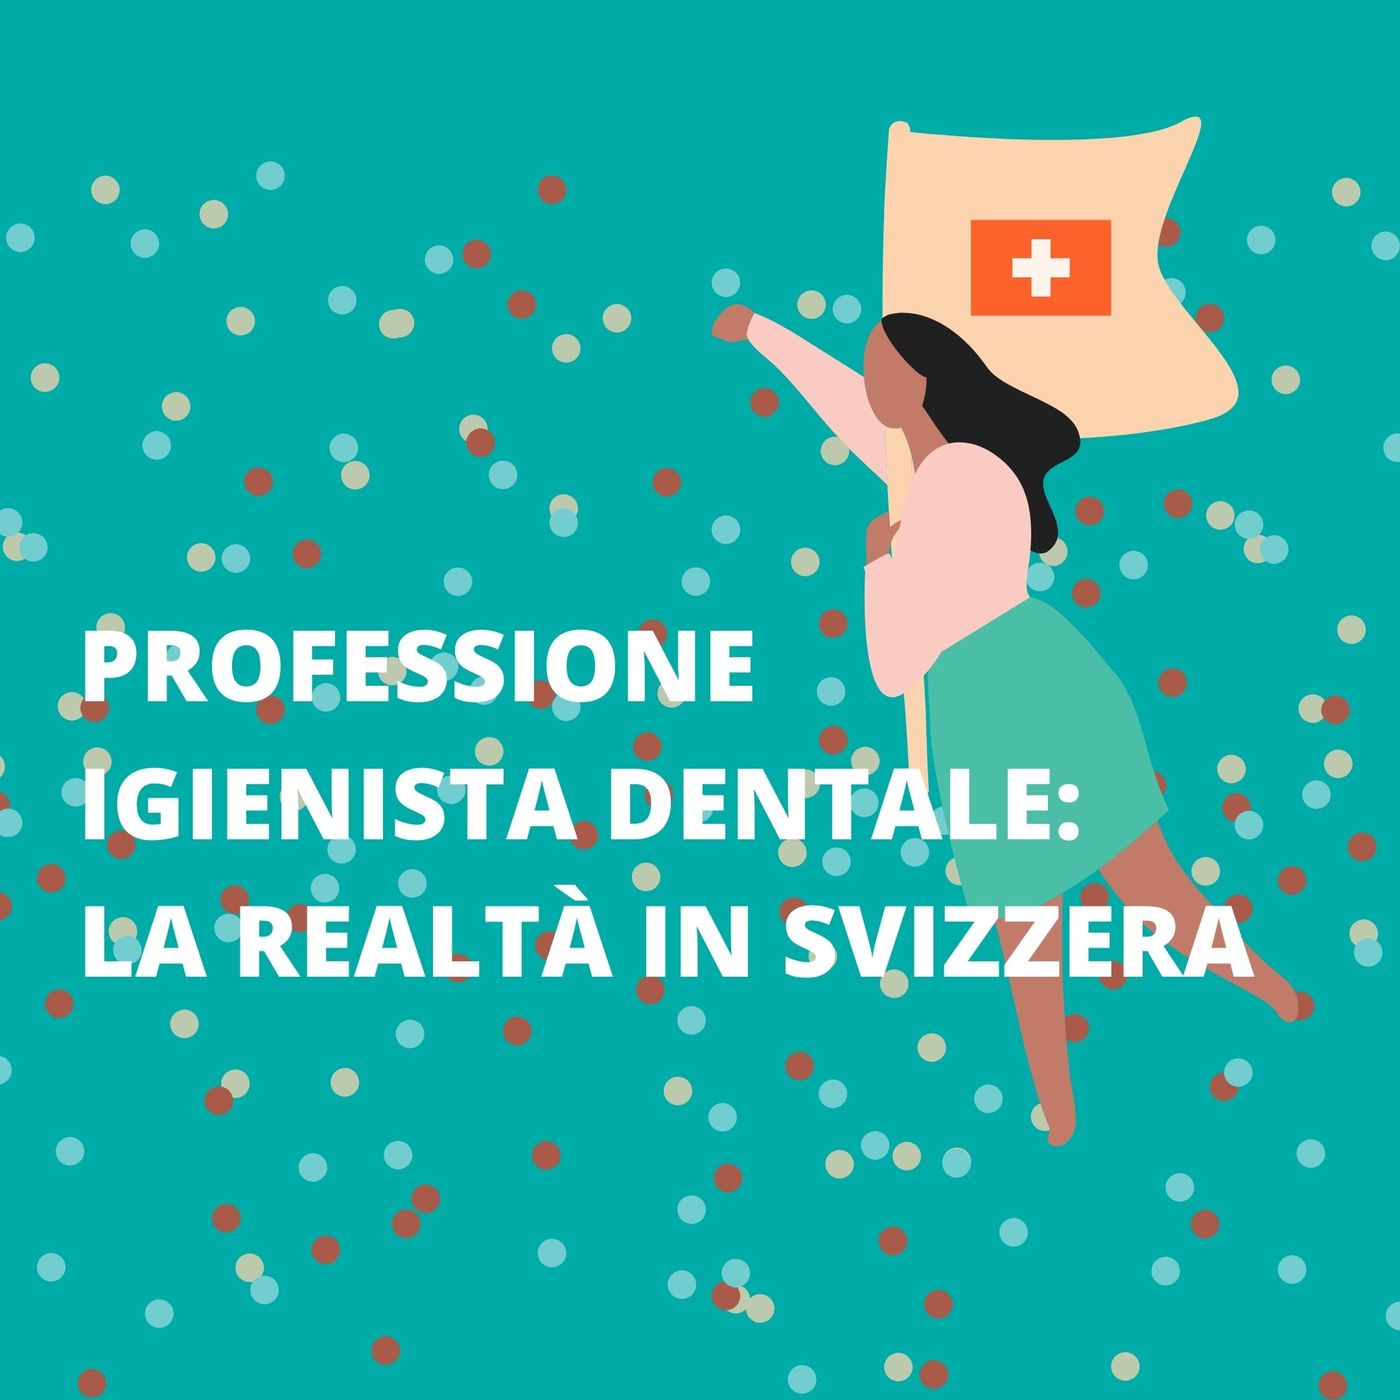 [Vita da ID] Professione Igienista Dentale: la realtà in Svizzera - Dott.ssa Lucia Pezzella